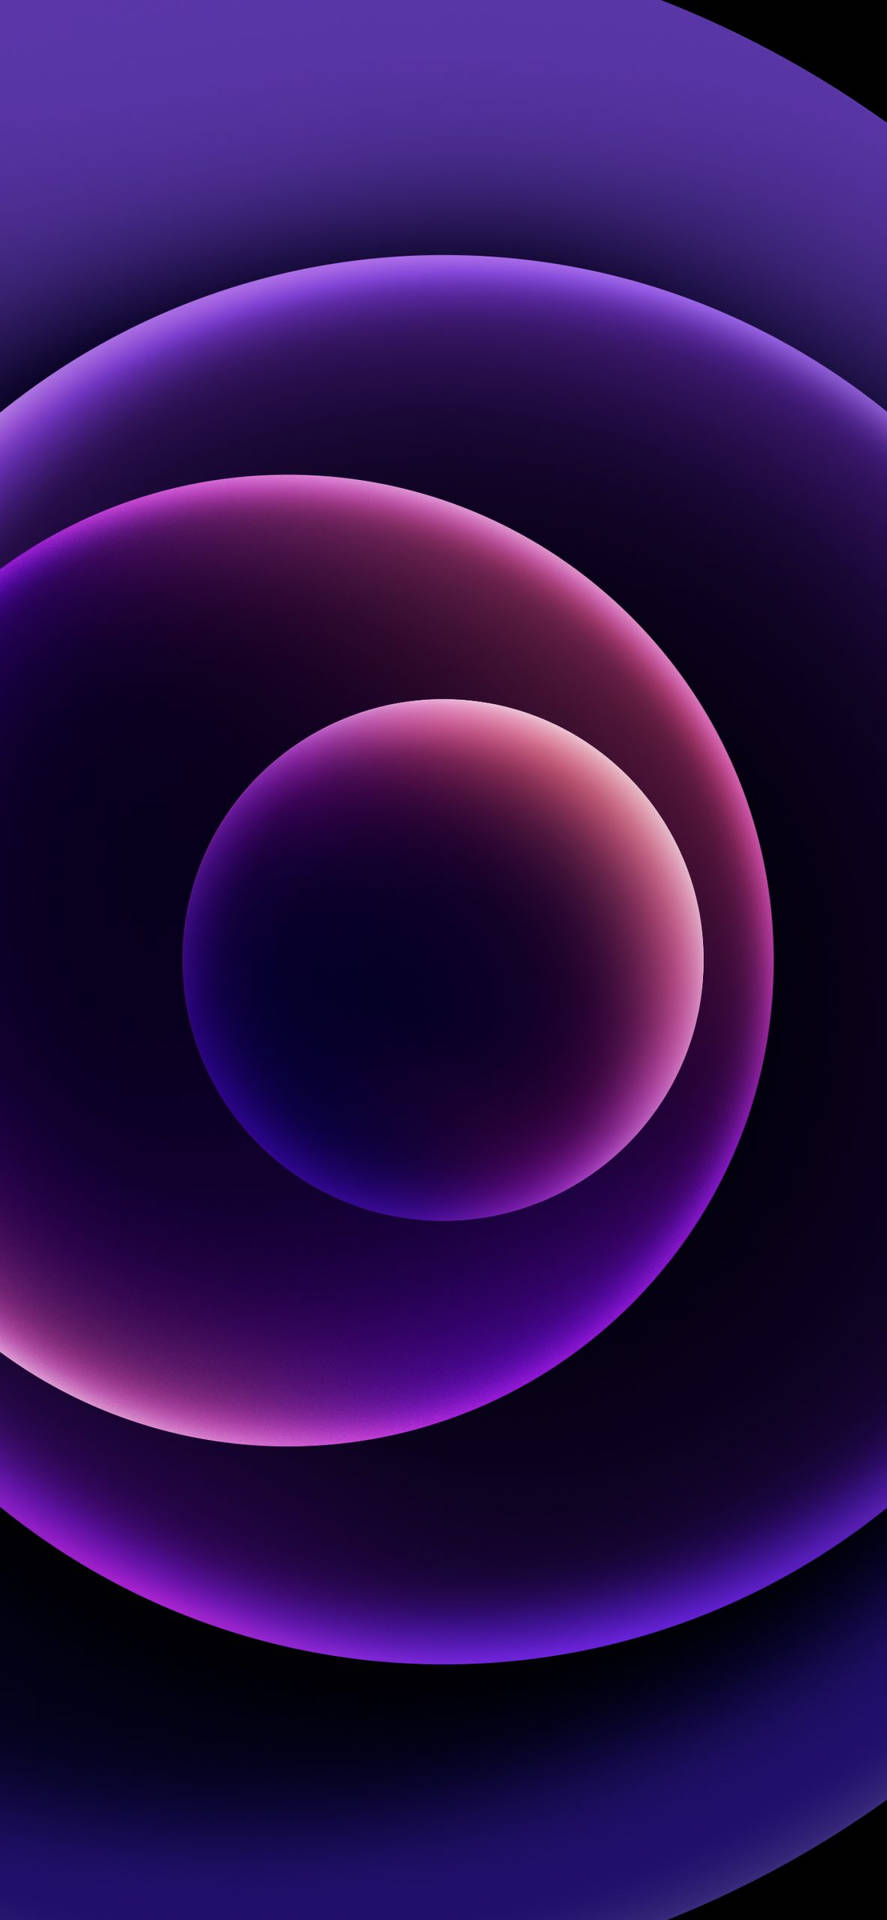 Neon purple wallpaper, iphone background | Free Vector - rawpixel